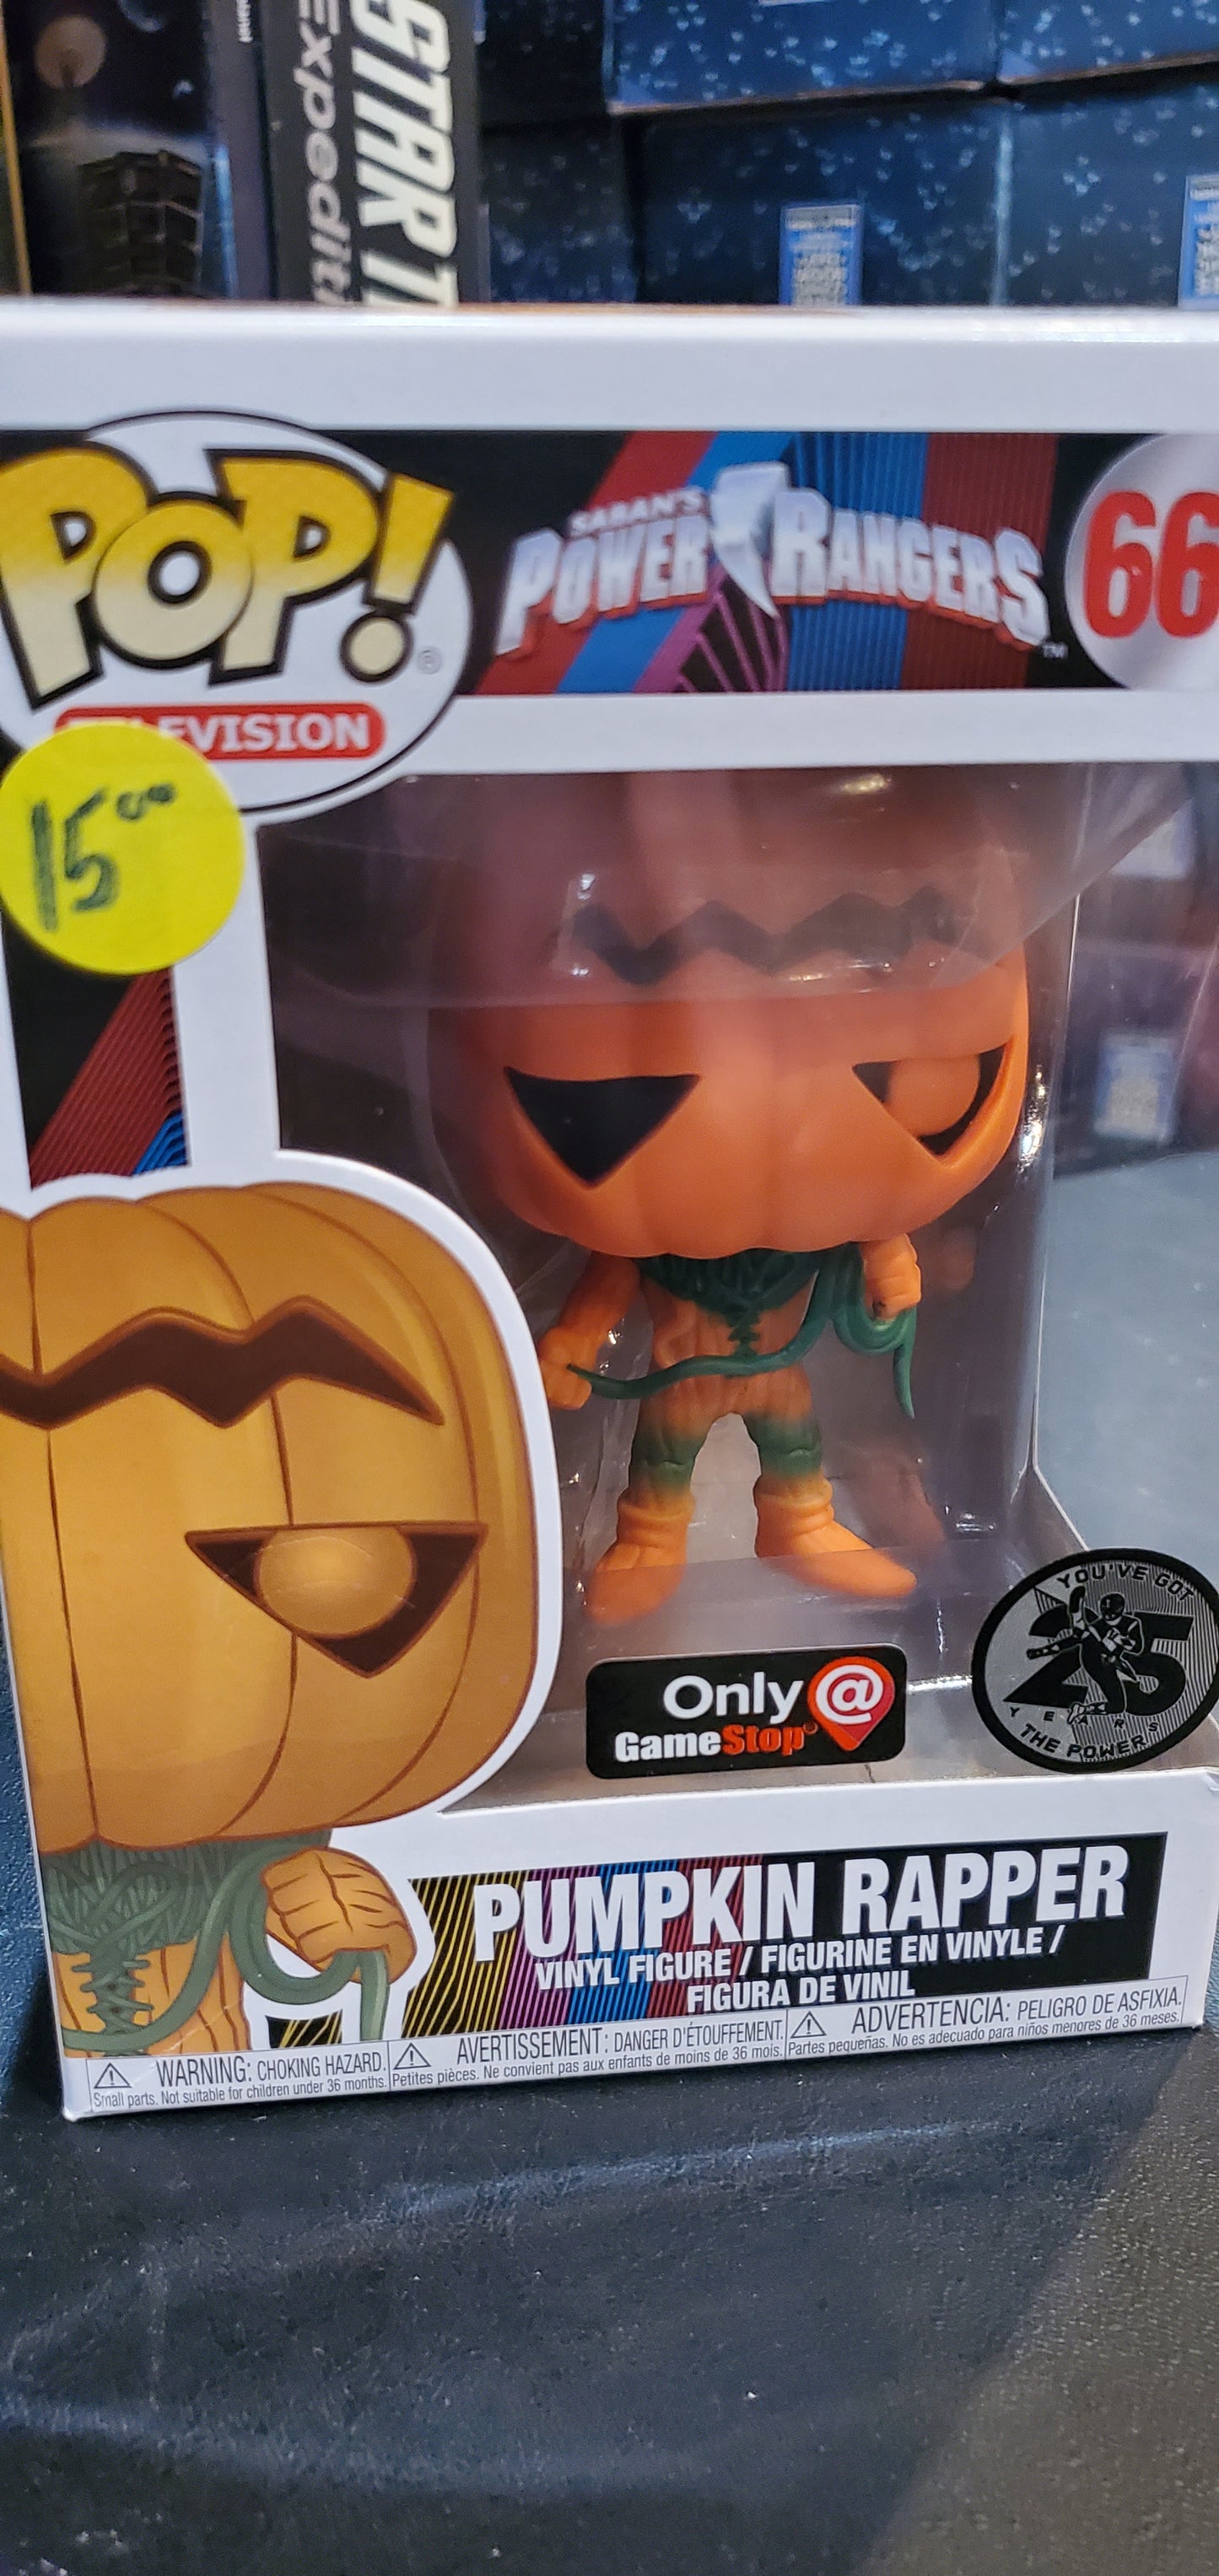 Power Rangers Pumpkin Rapper exclusive Funko Pop! vinyl figure